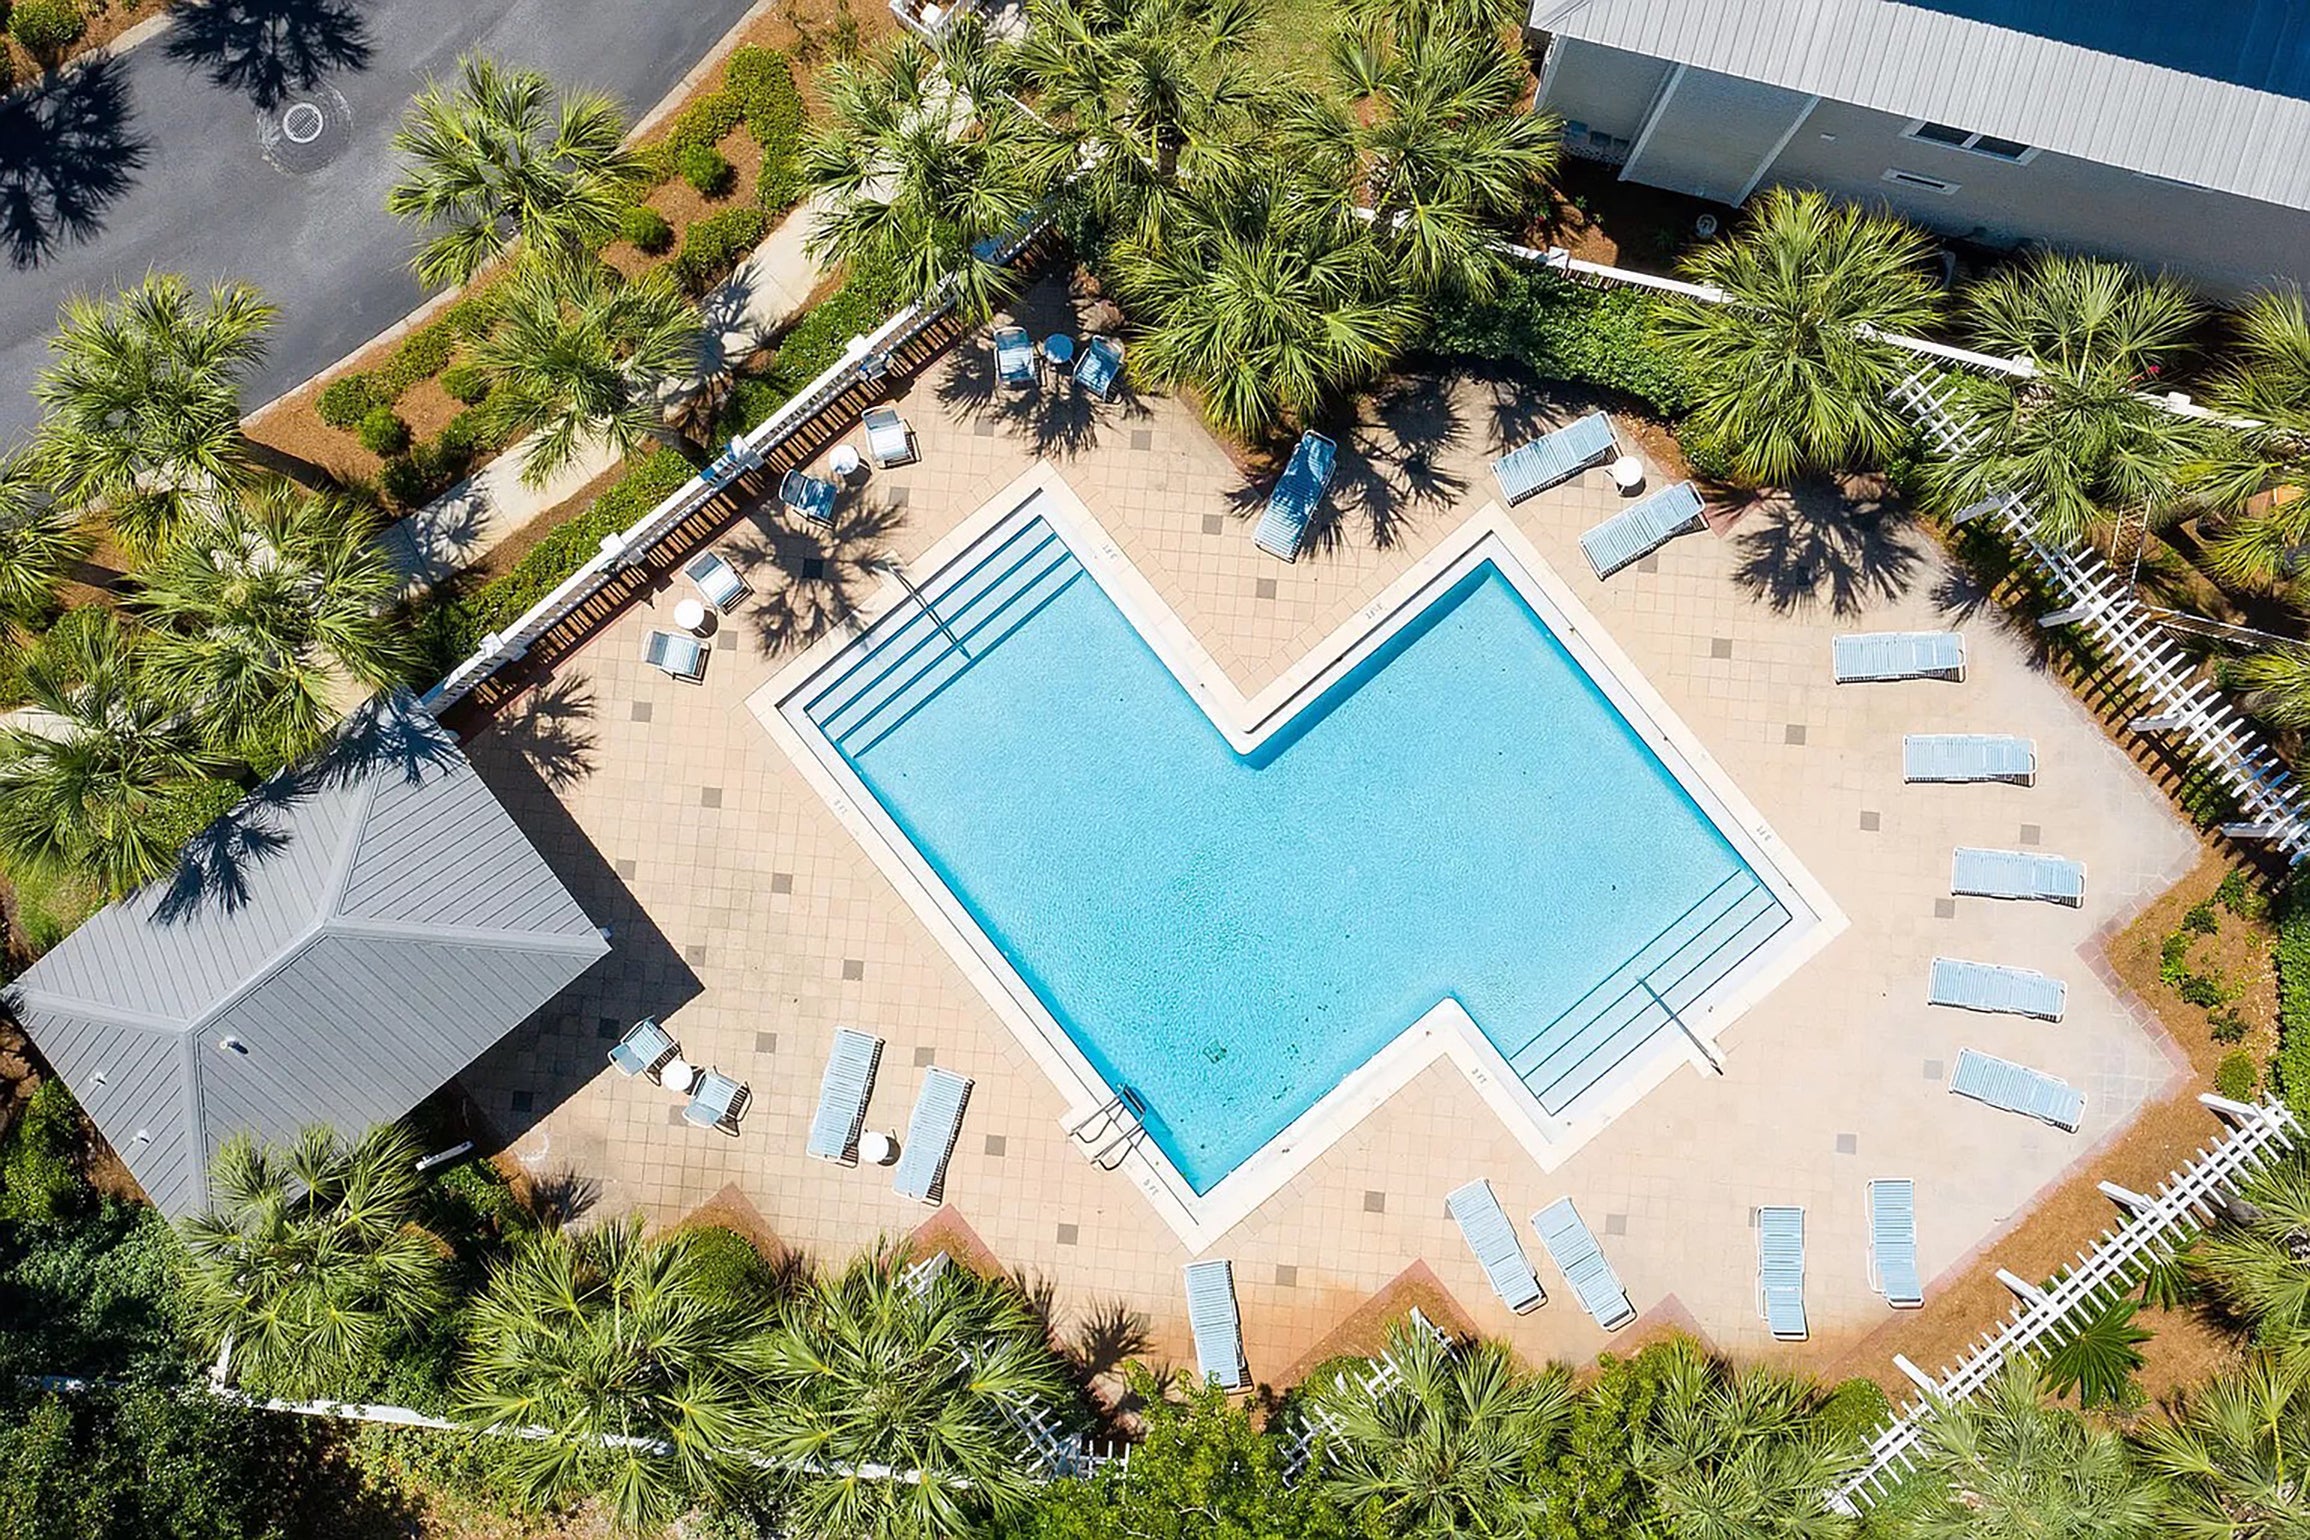 Aerial view of neighborhood pool